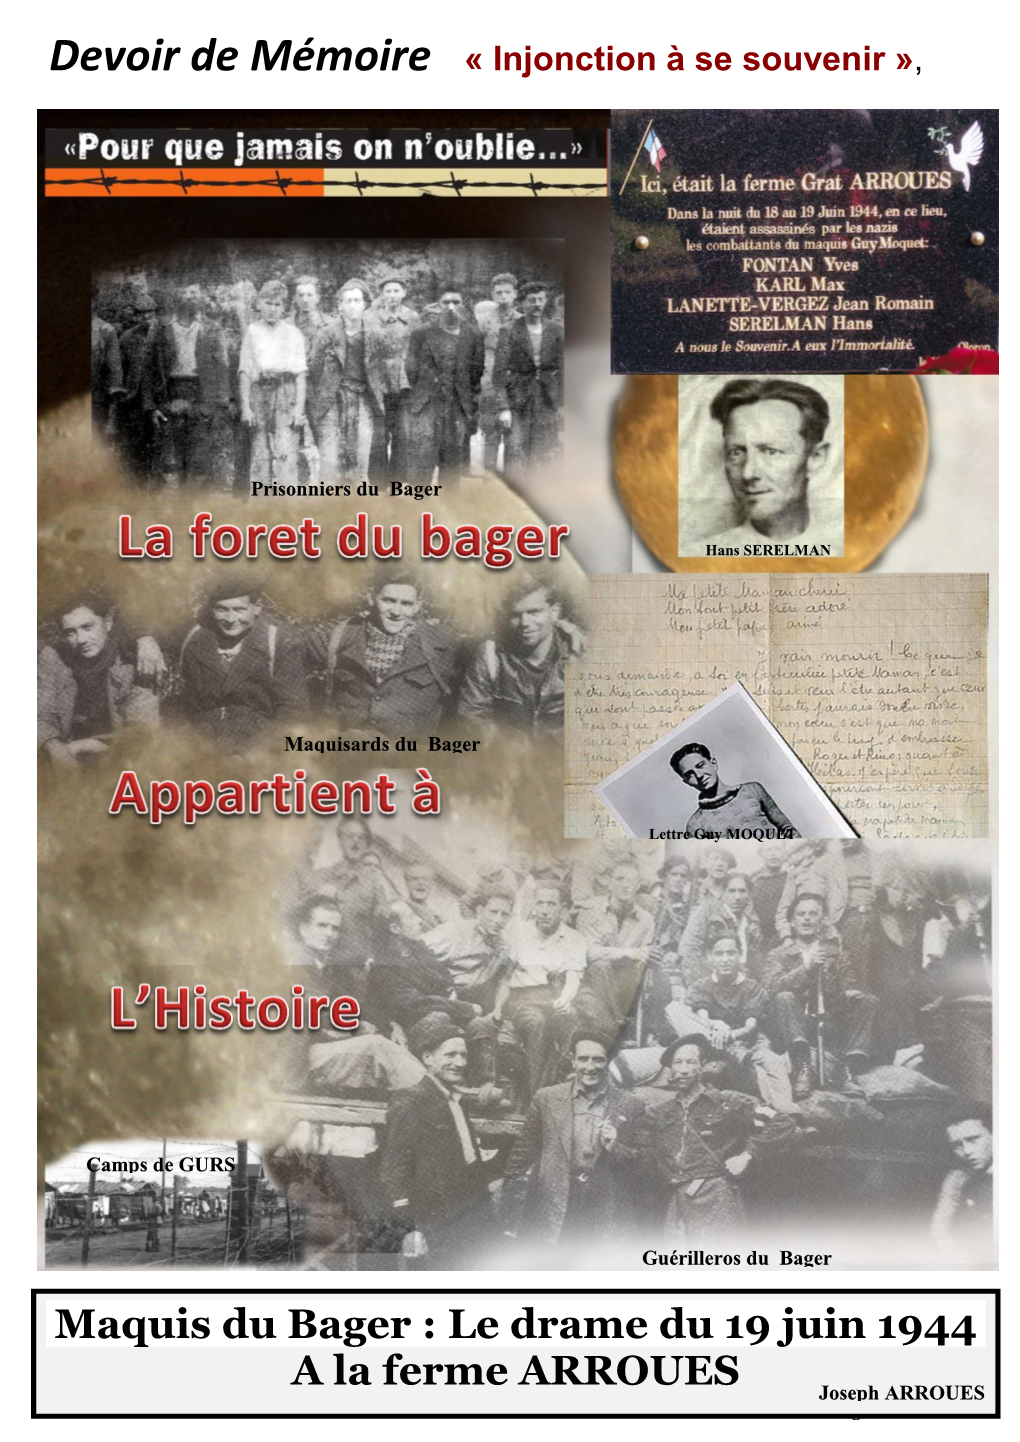 Maquis Du Bager : Le Drame Du 19 Juin 1944 a La Ferme ARROUES